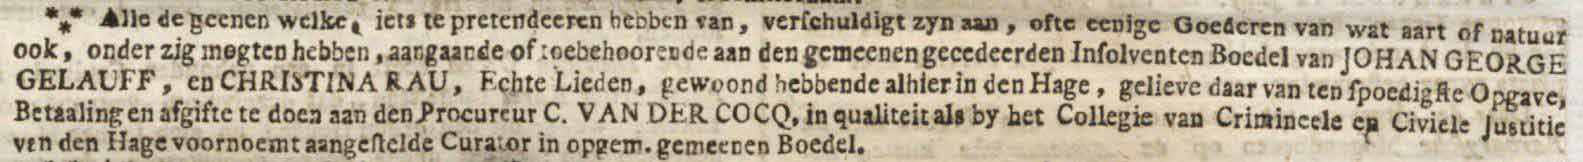 Haagsche courant 29-06-1801 - Het oudst bekende krantenbericht betreffende een Gelauff